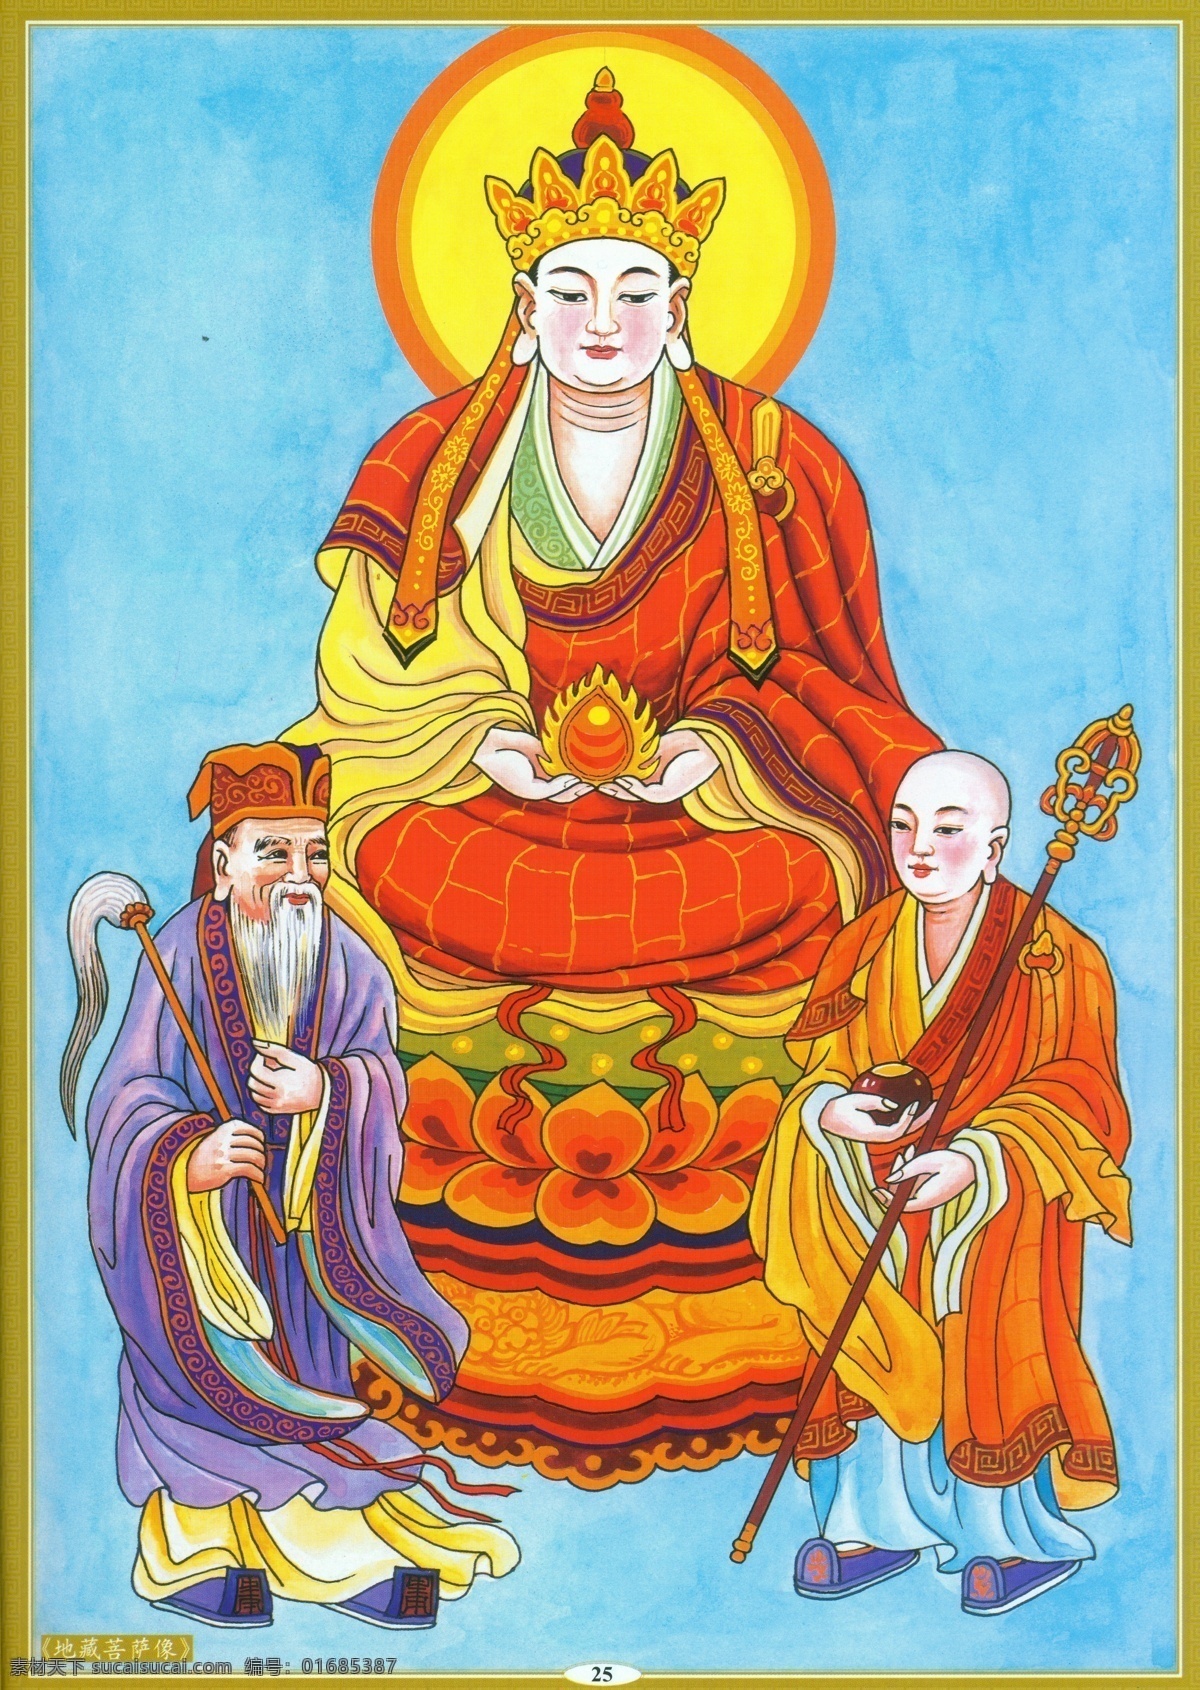 地藏菩萨像 设计素材 神祇图篇 民间美术 书画美术 青色 天蓝色